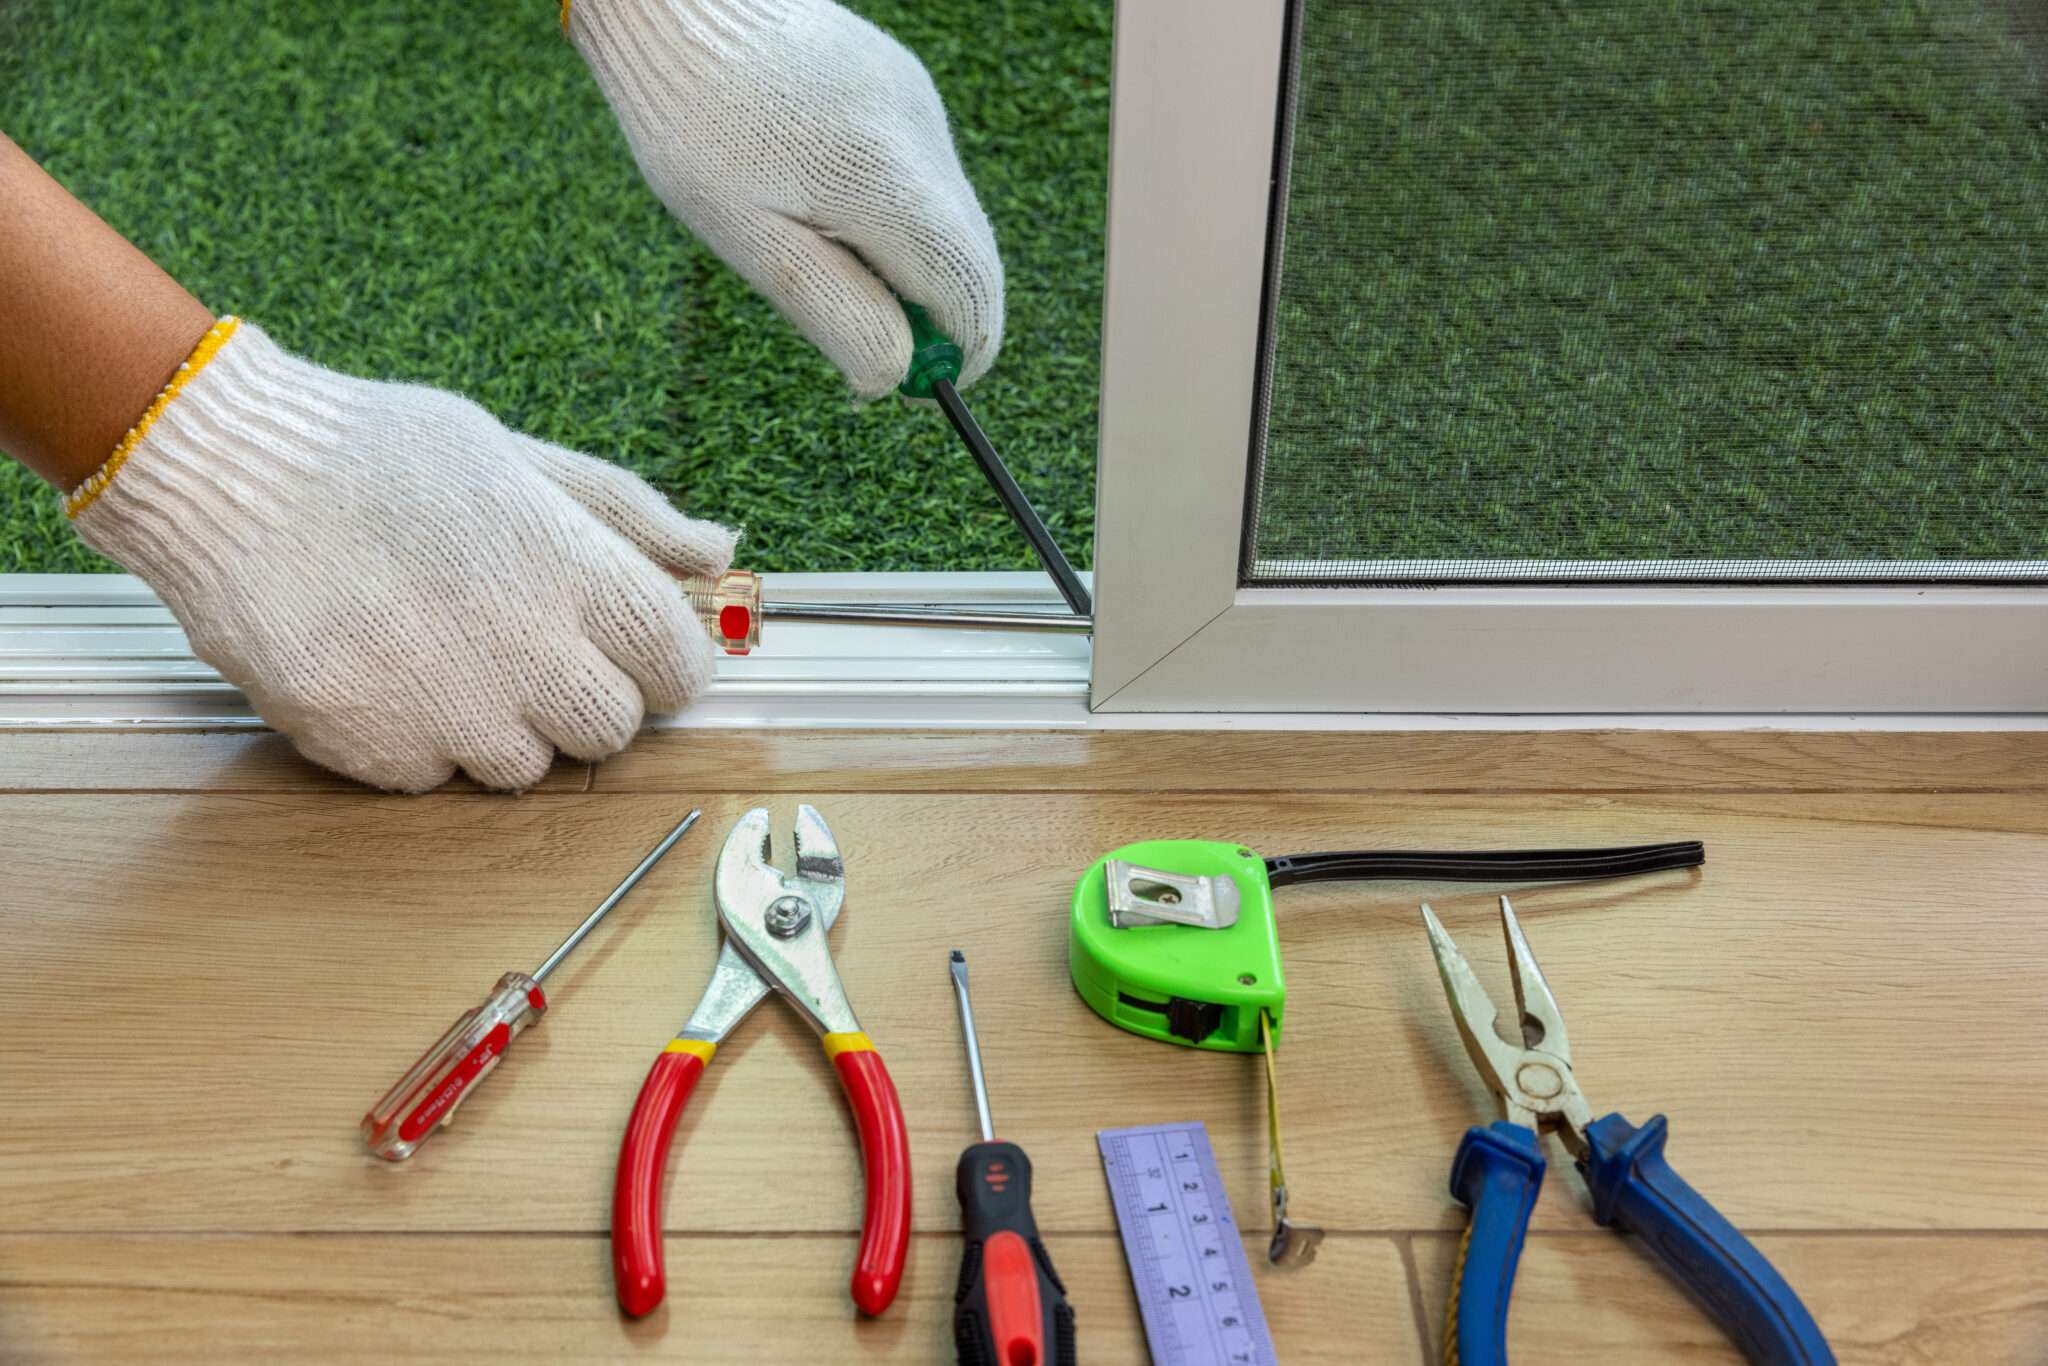 Gloved hands fixing screen door with tools